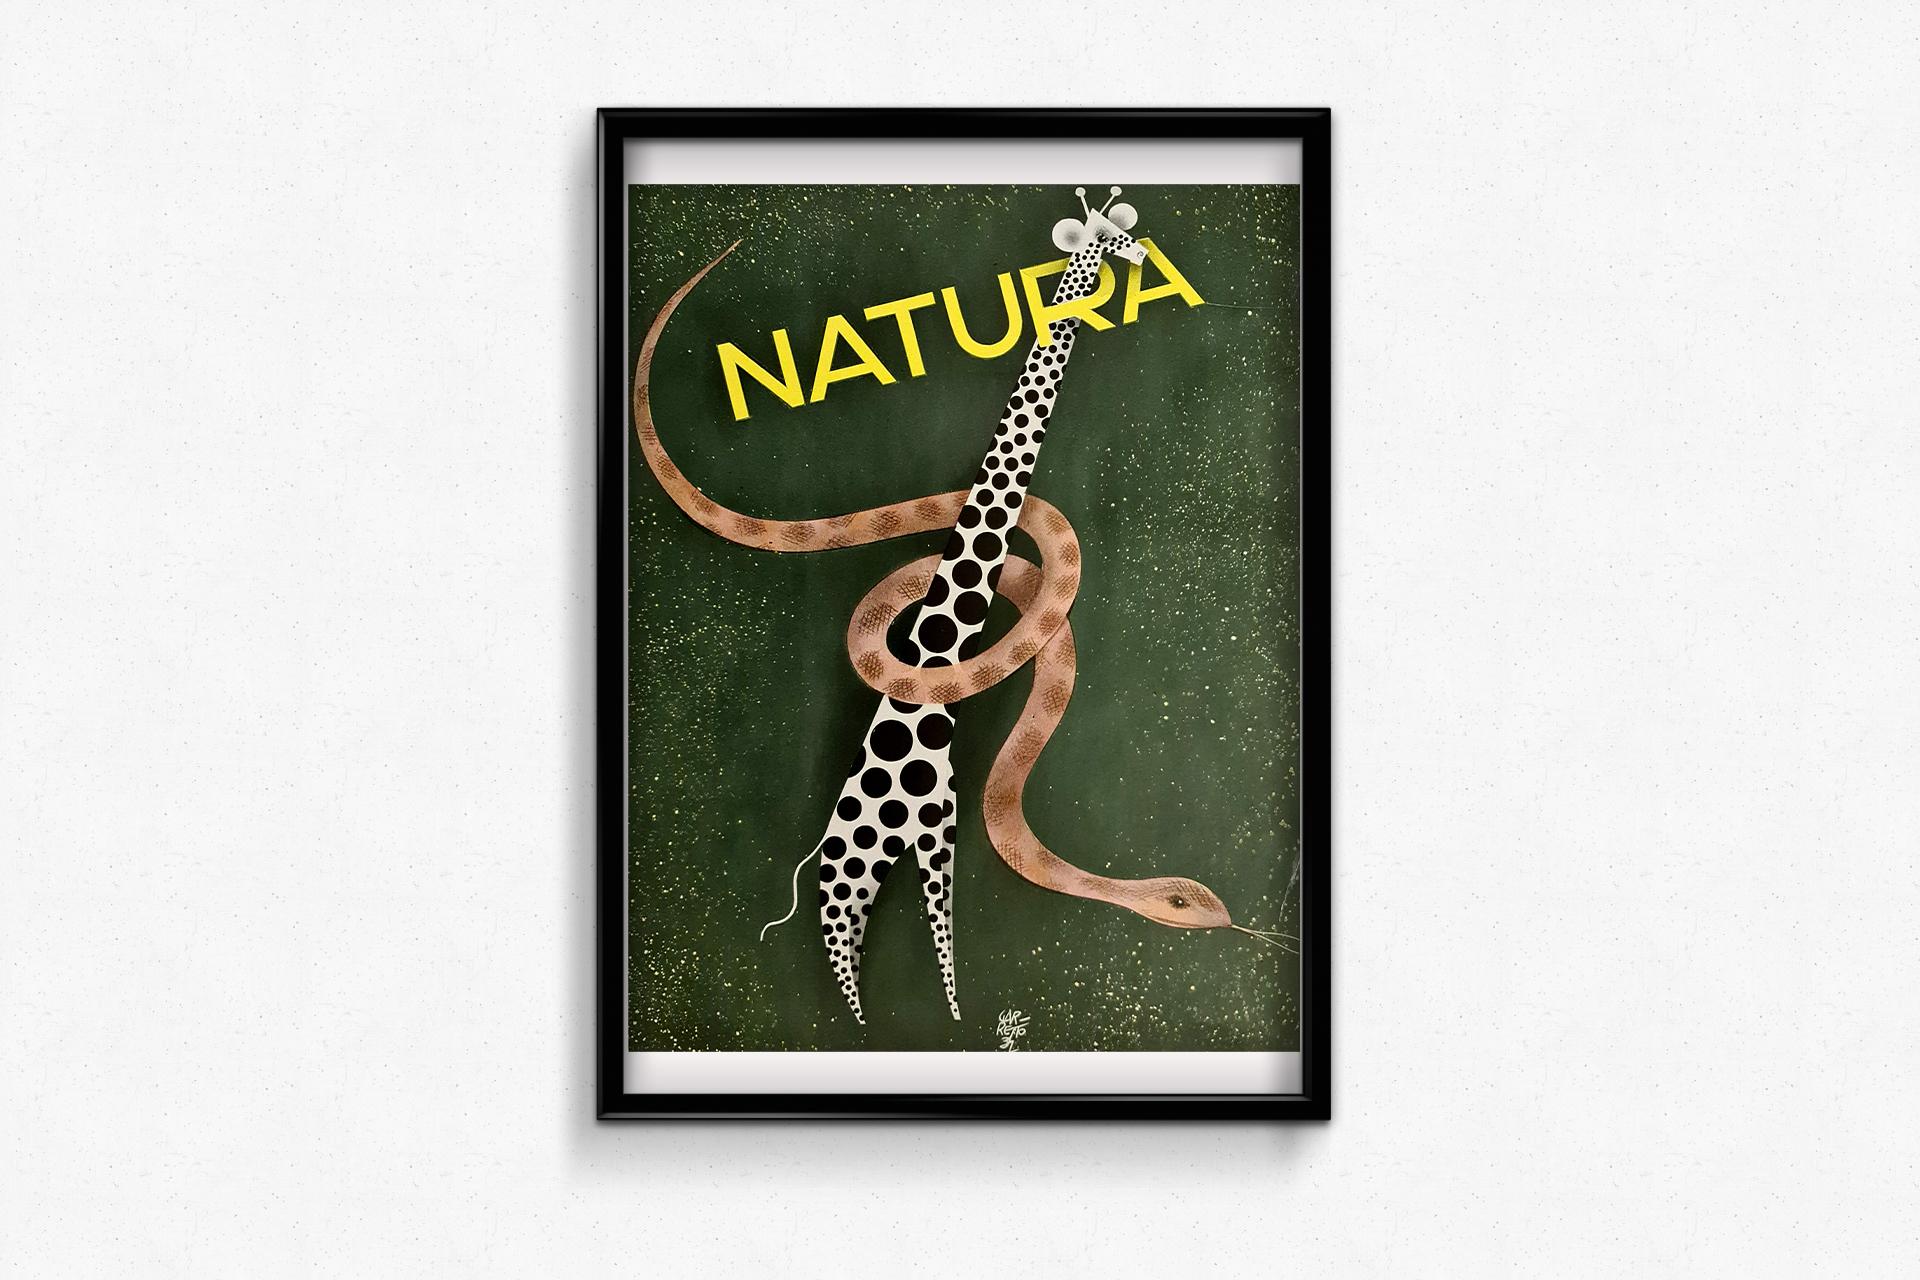 Une belle affiche réalisée par Paolo Garretto pour promouvoir le magazine Natura en vente 1